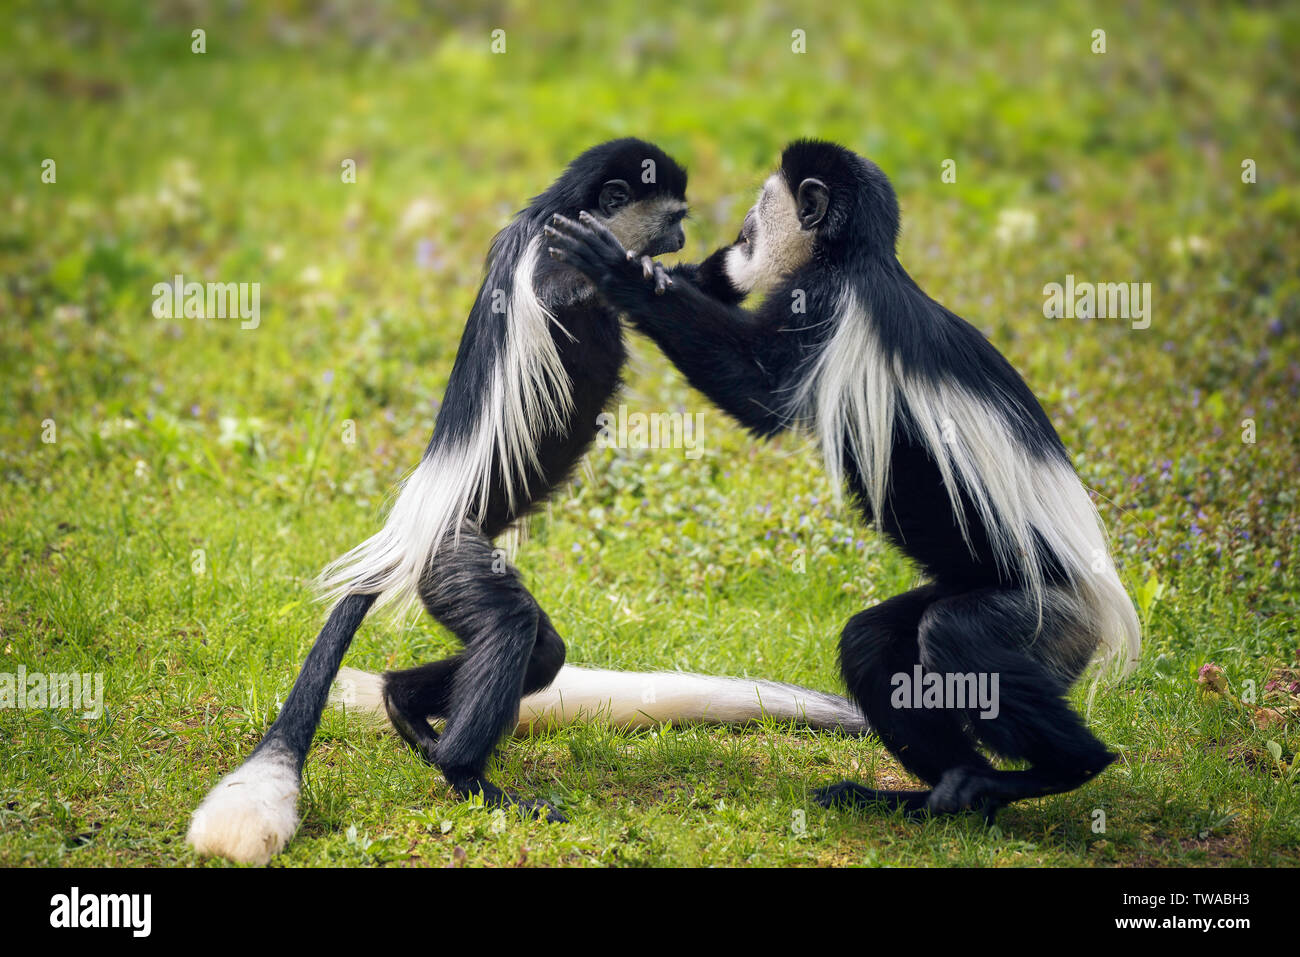 Zwei Mantled guereza Affen im Gras kämpfen Stockfoto